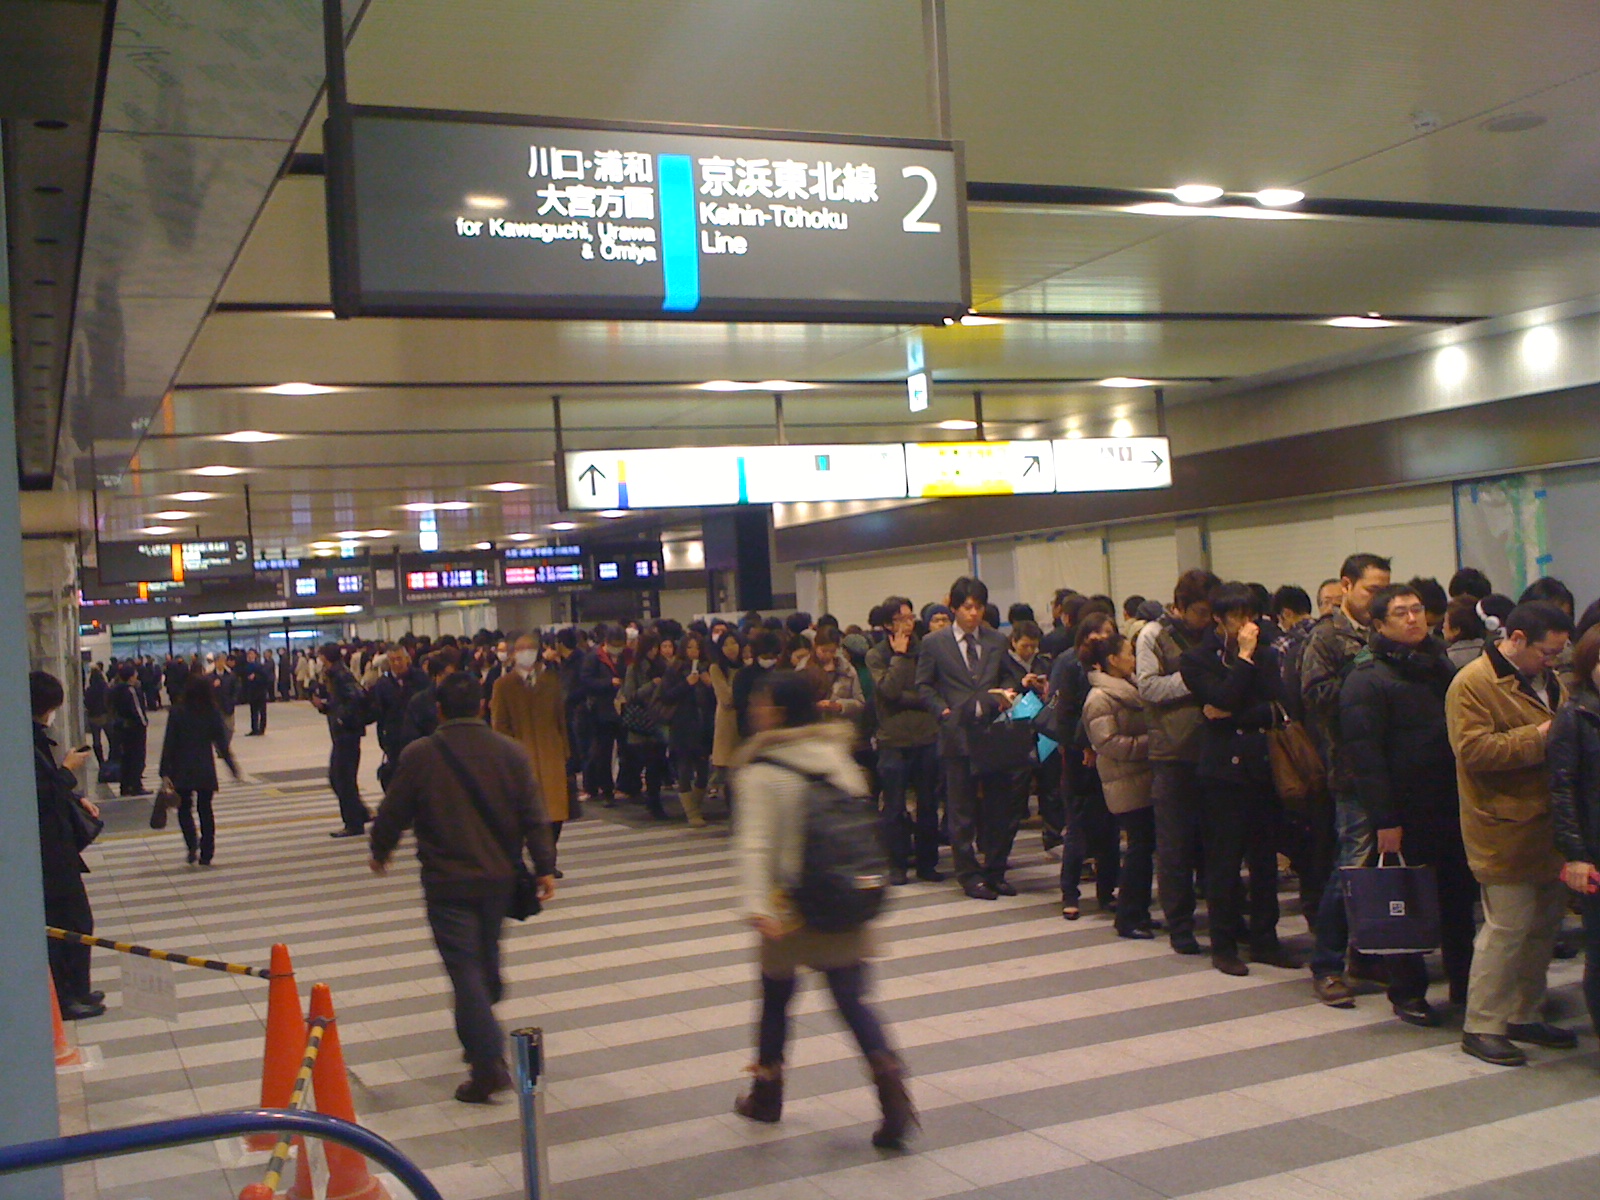 车站内 人们很自觉的排着队乘电车。